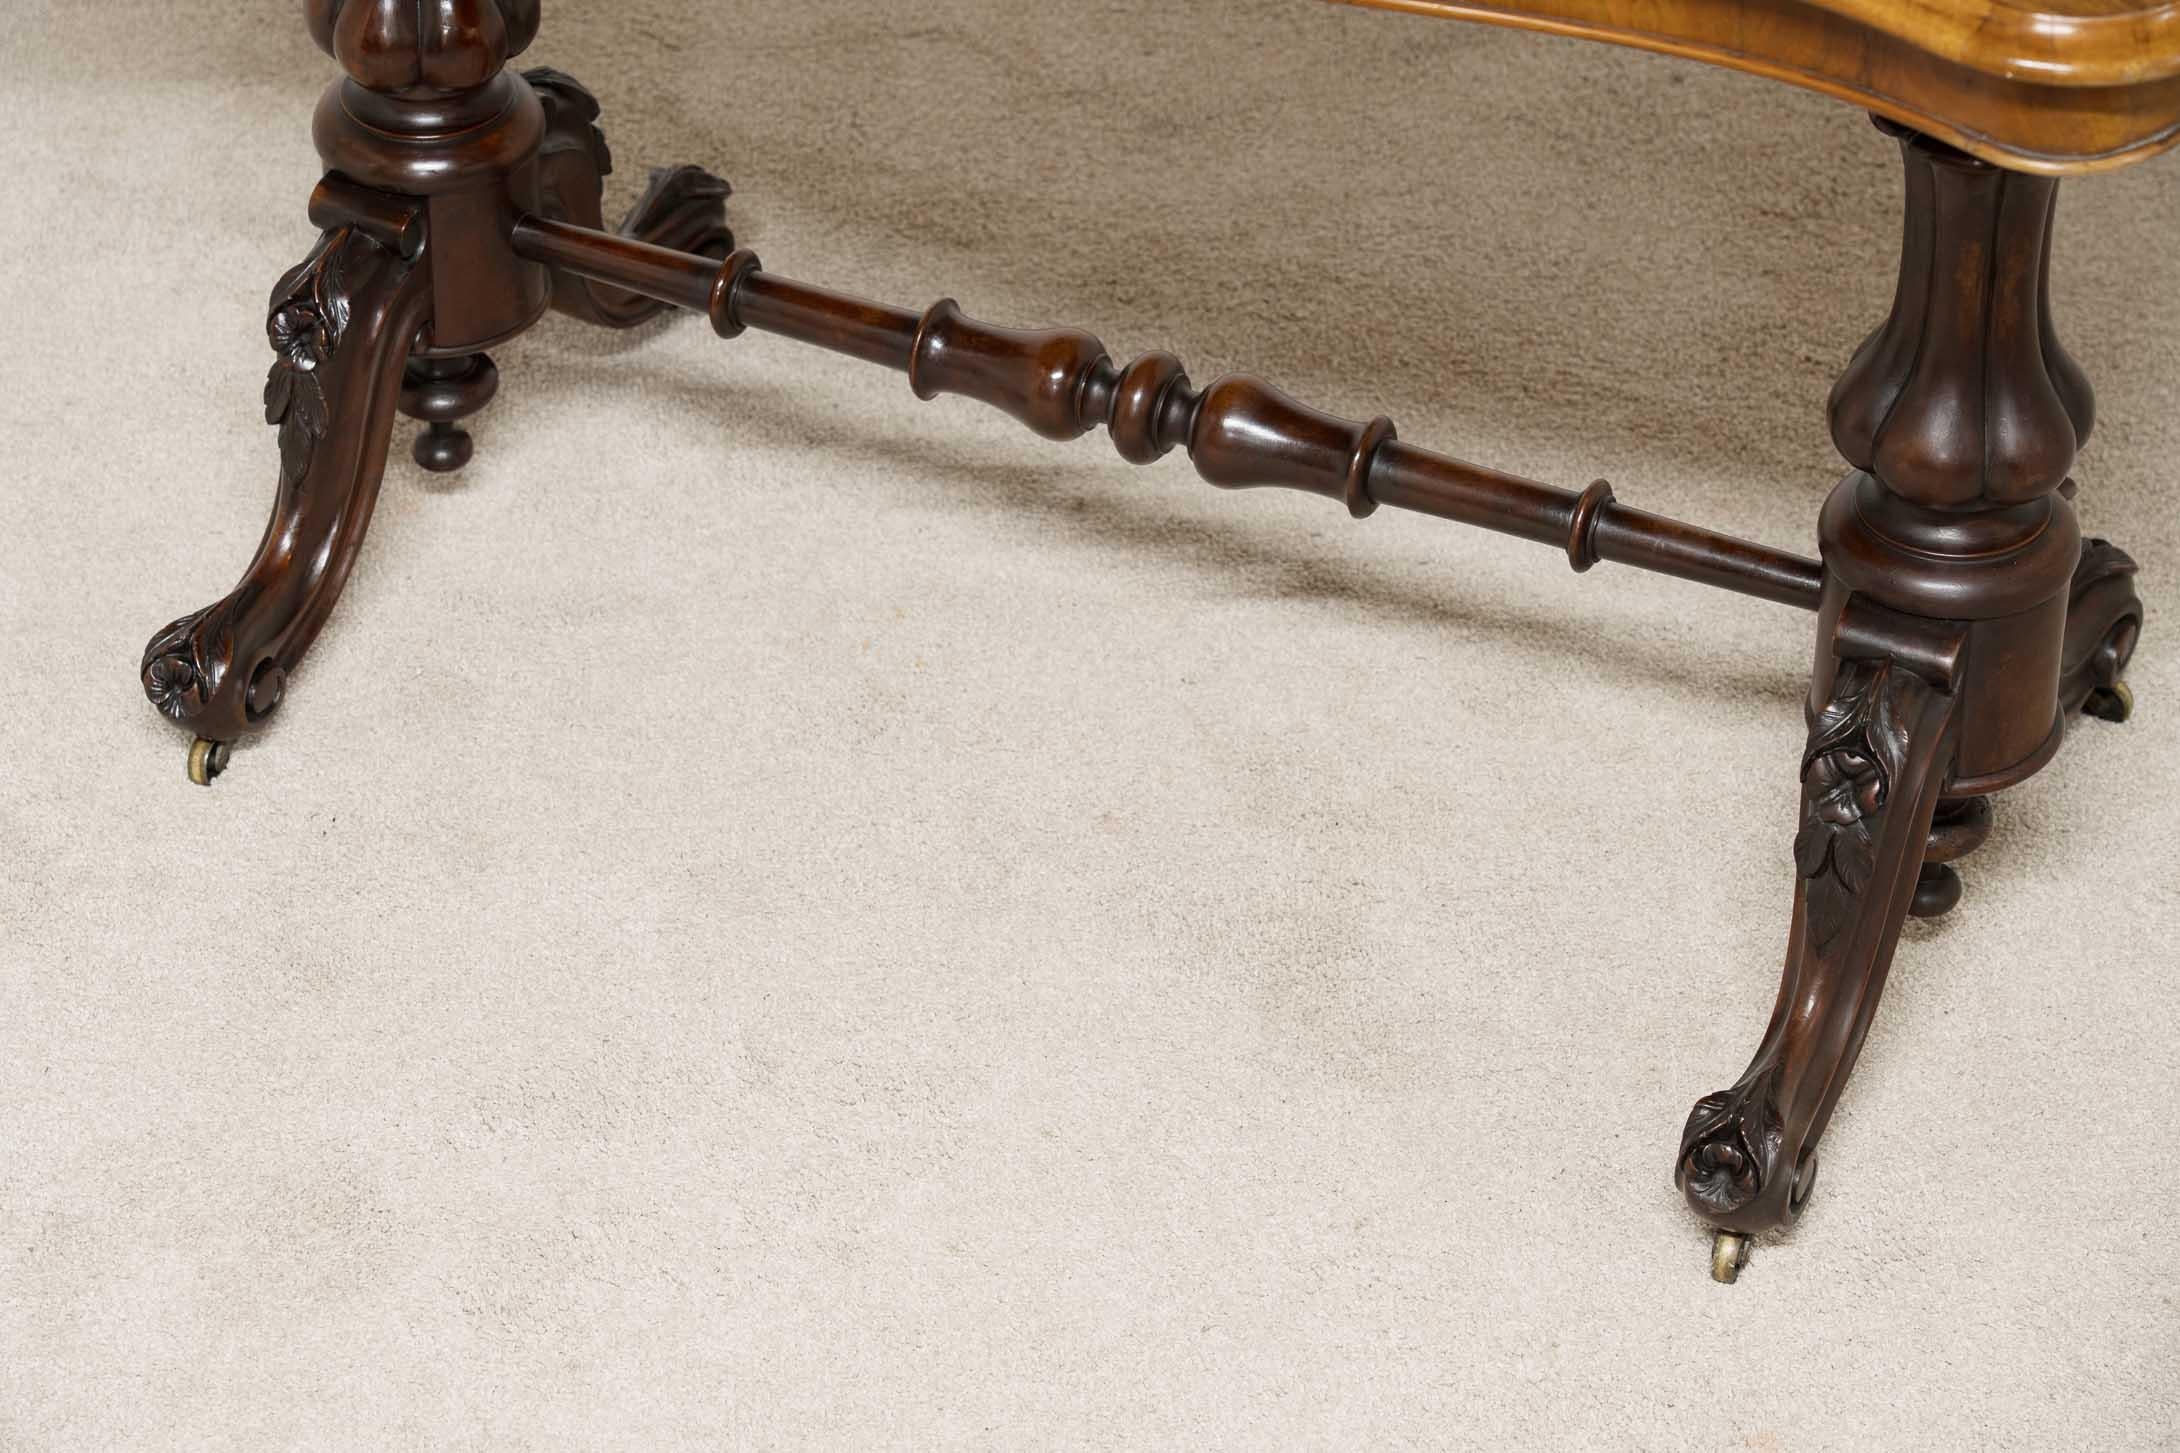 Eleganter viktorianischer Bahre - oder Beistelltisch
Handgefertigt aus Nussbaumholz, datiert auf ca. 1880
Elegante Form der Tischplatte und geschnitzte Füße
Sehen Sie sich die prächtige Patina des Wurzelholzes an
Wird in hervorragendem Zustand